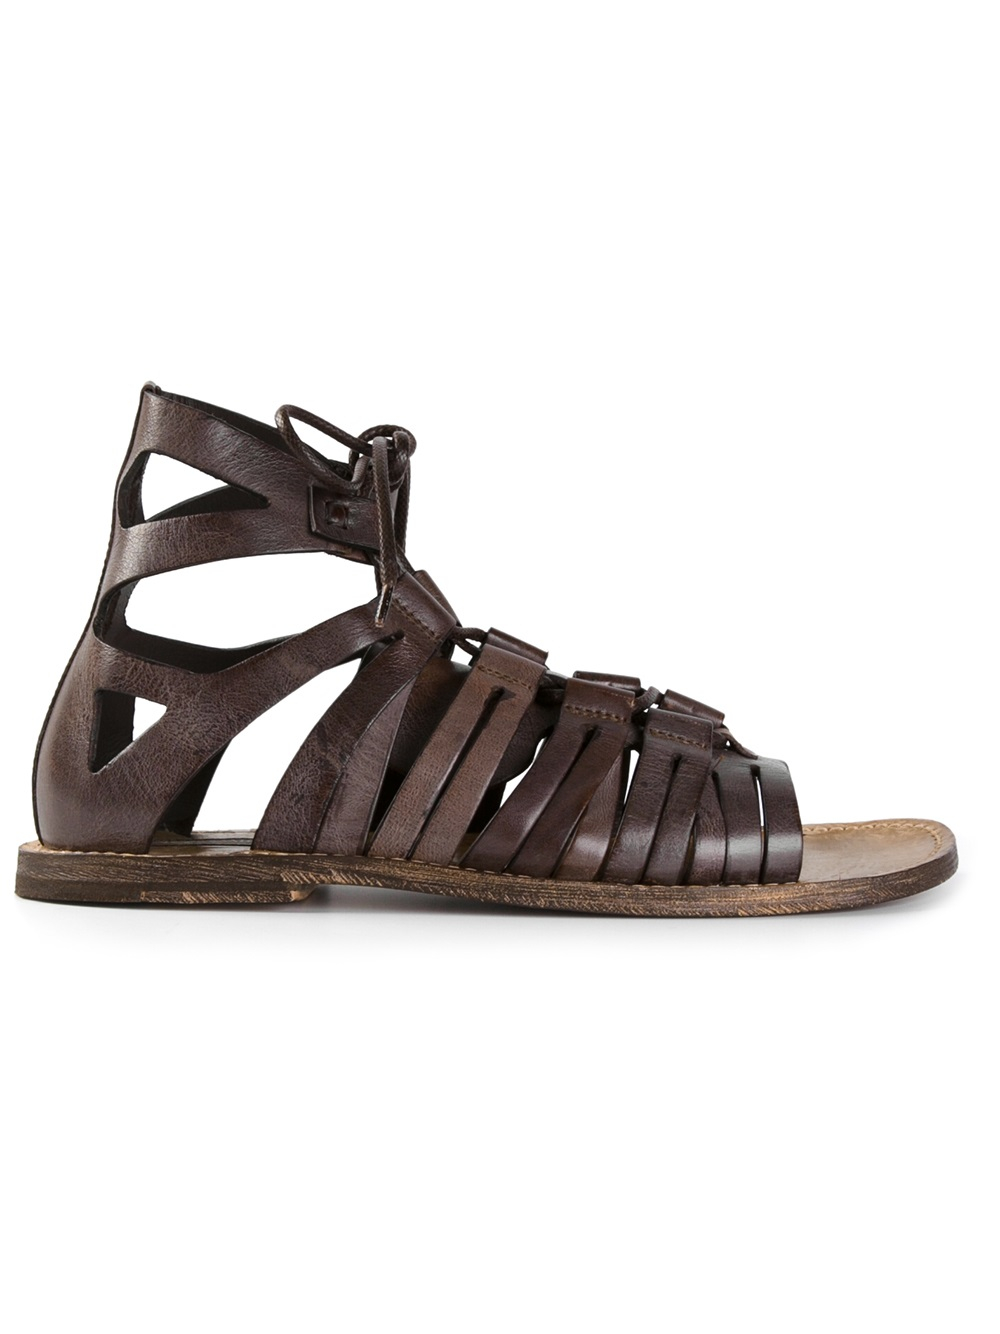 Dolce \u0026 Gabbana Gladiator Sandals in 